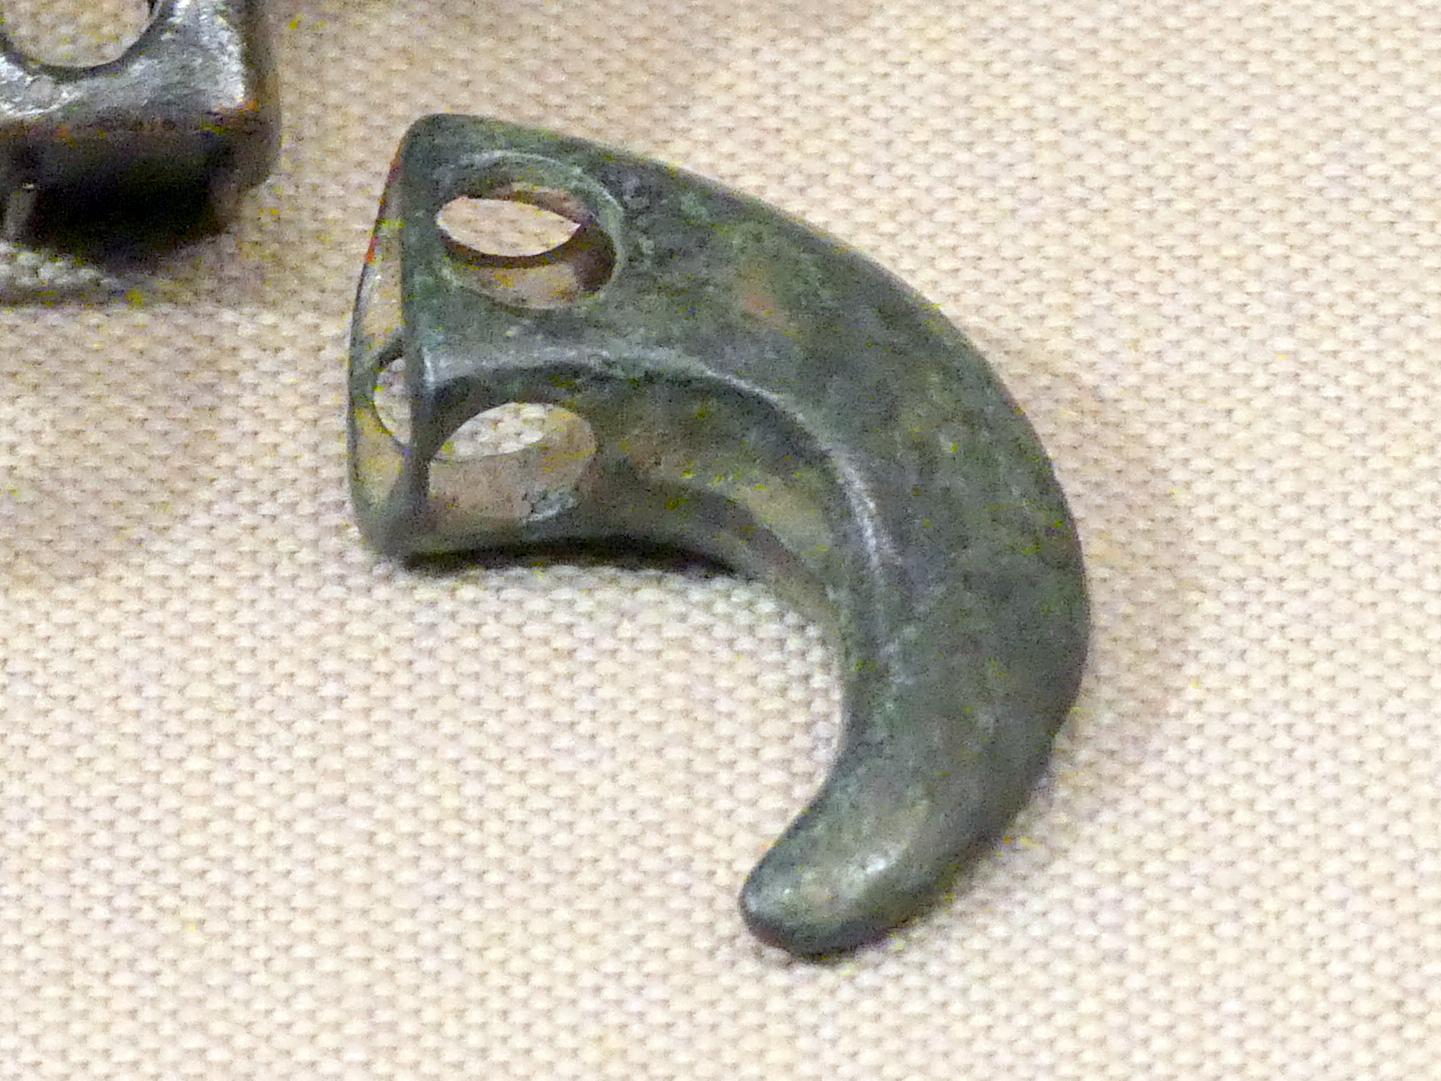 Geschirr oder Zaumzeugbeschlag in Form einer Kralle, Altpersisches Reich, 600 - 300 v. Chr., 600 - 300 v. Chr.